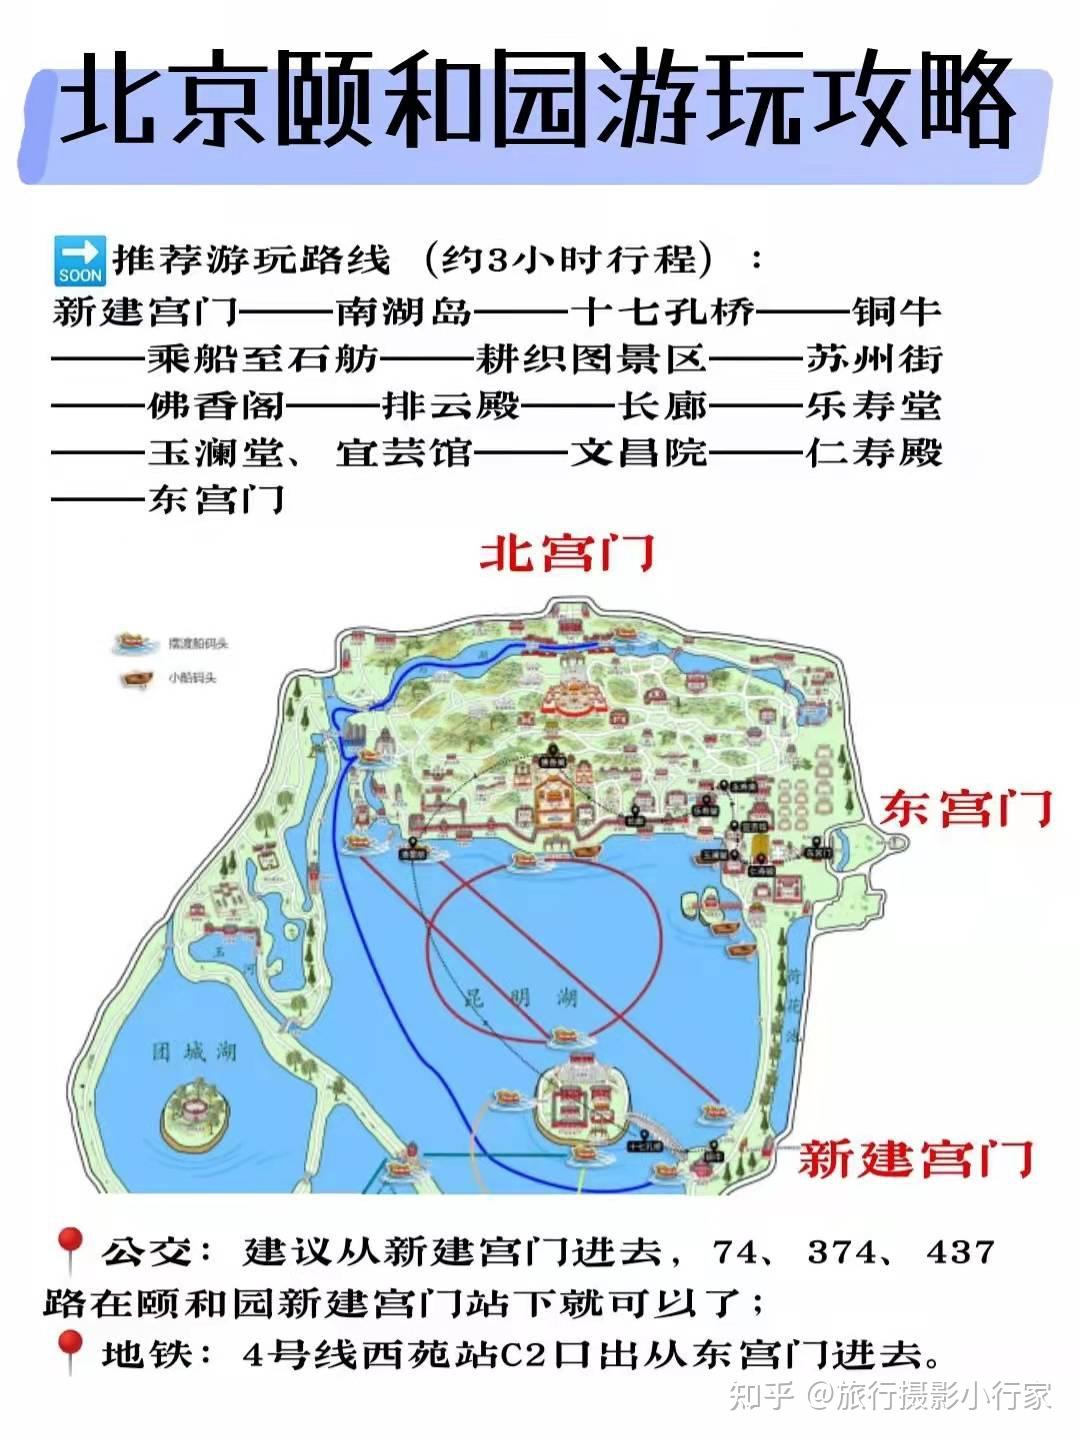 颐和园地图内部图片